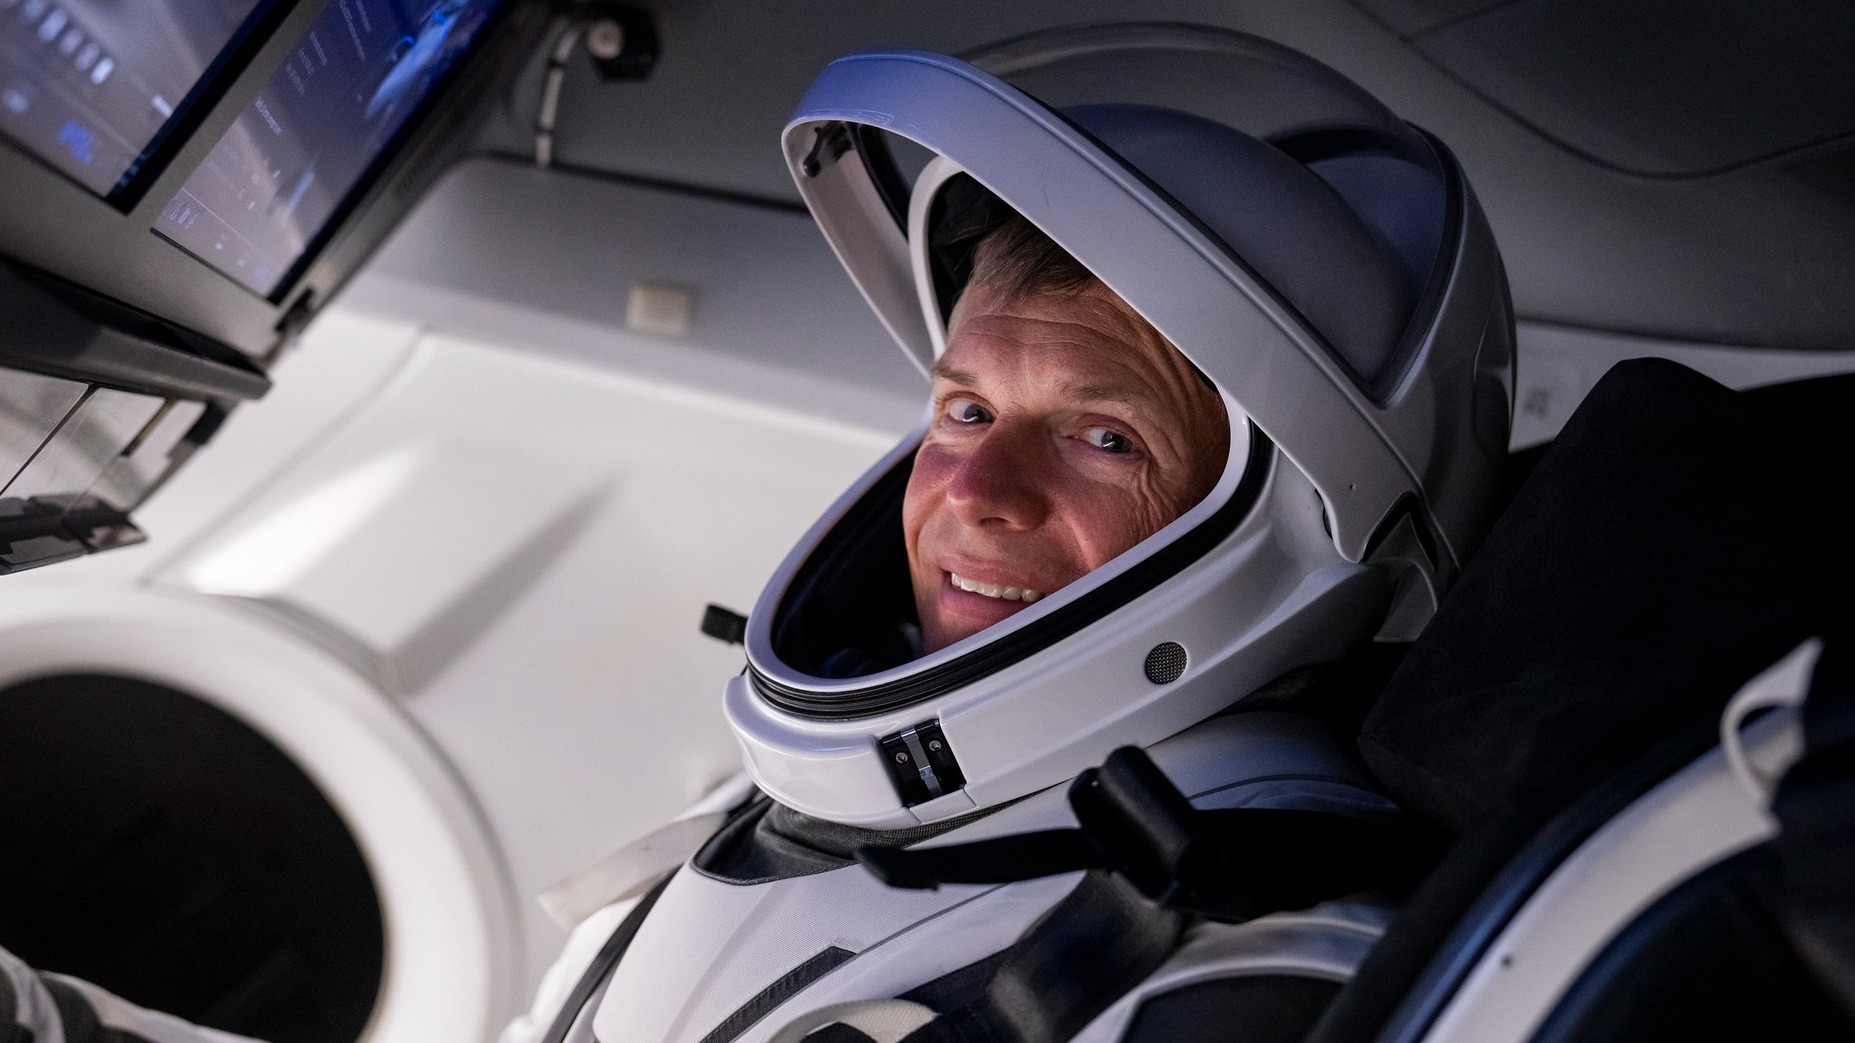 Andreas Mogensen ve skafandru sedí v kosmické lodi, dívá se do kamery a usmívá se.  Obrazovky jsou viditelné v levé horní části obrázku